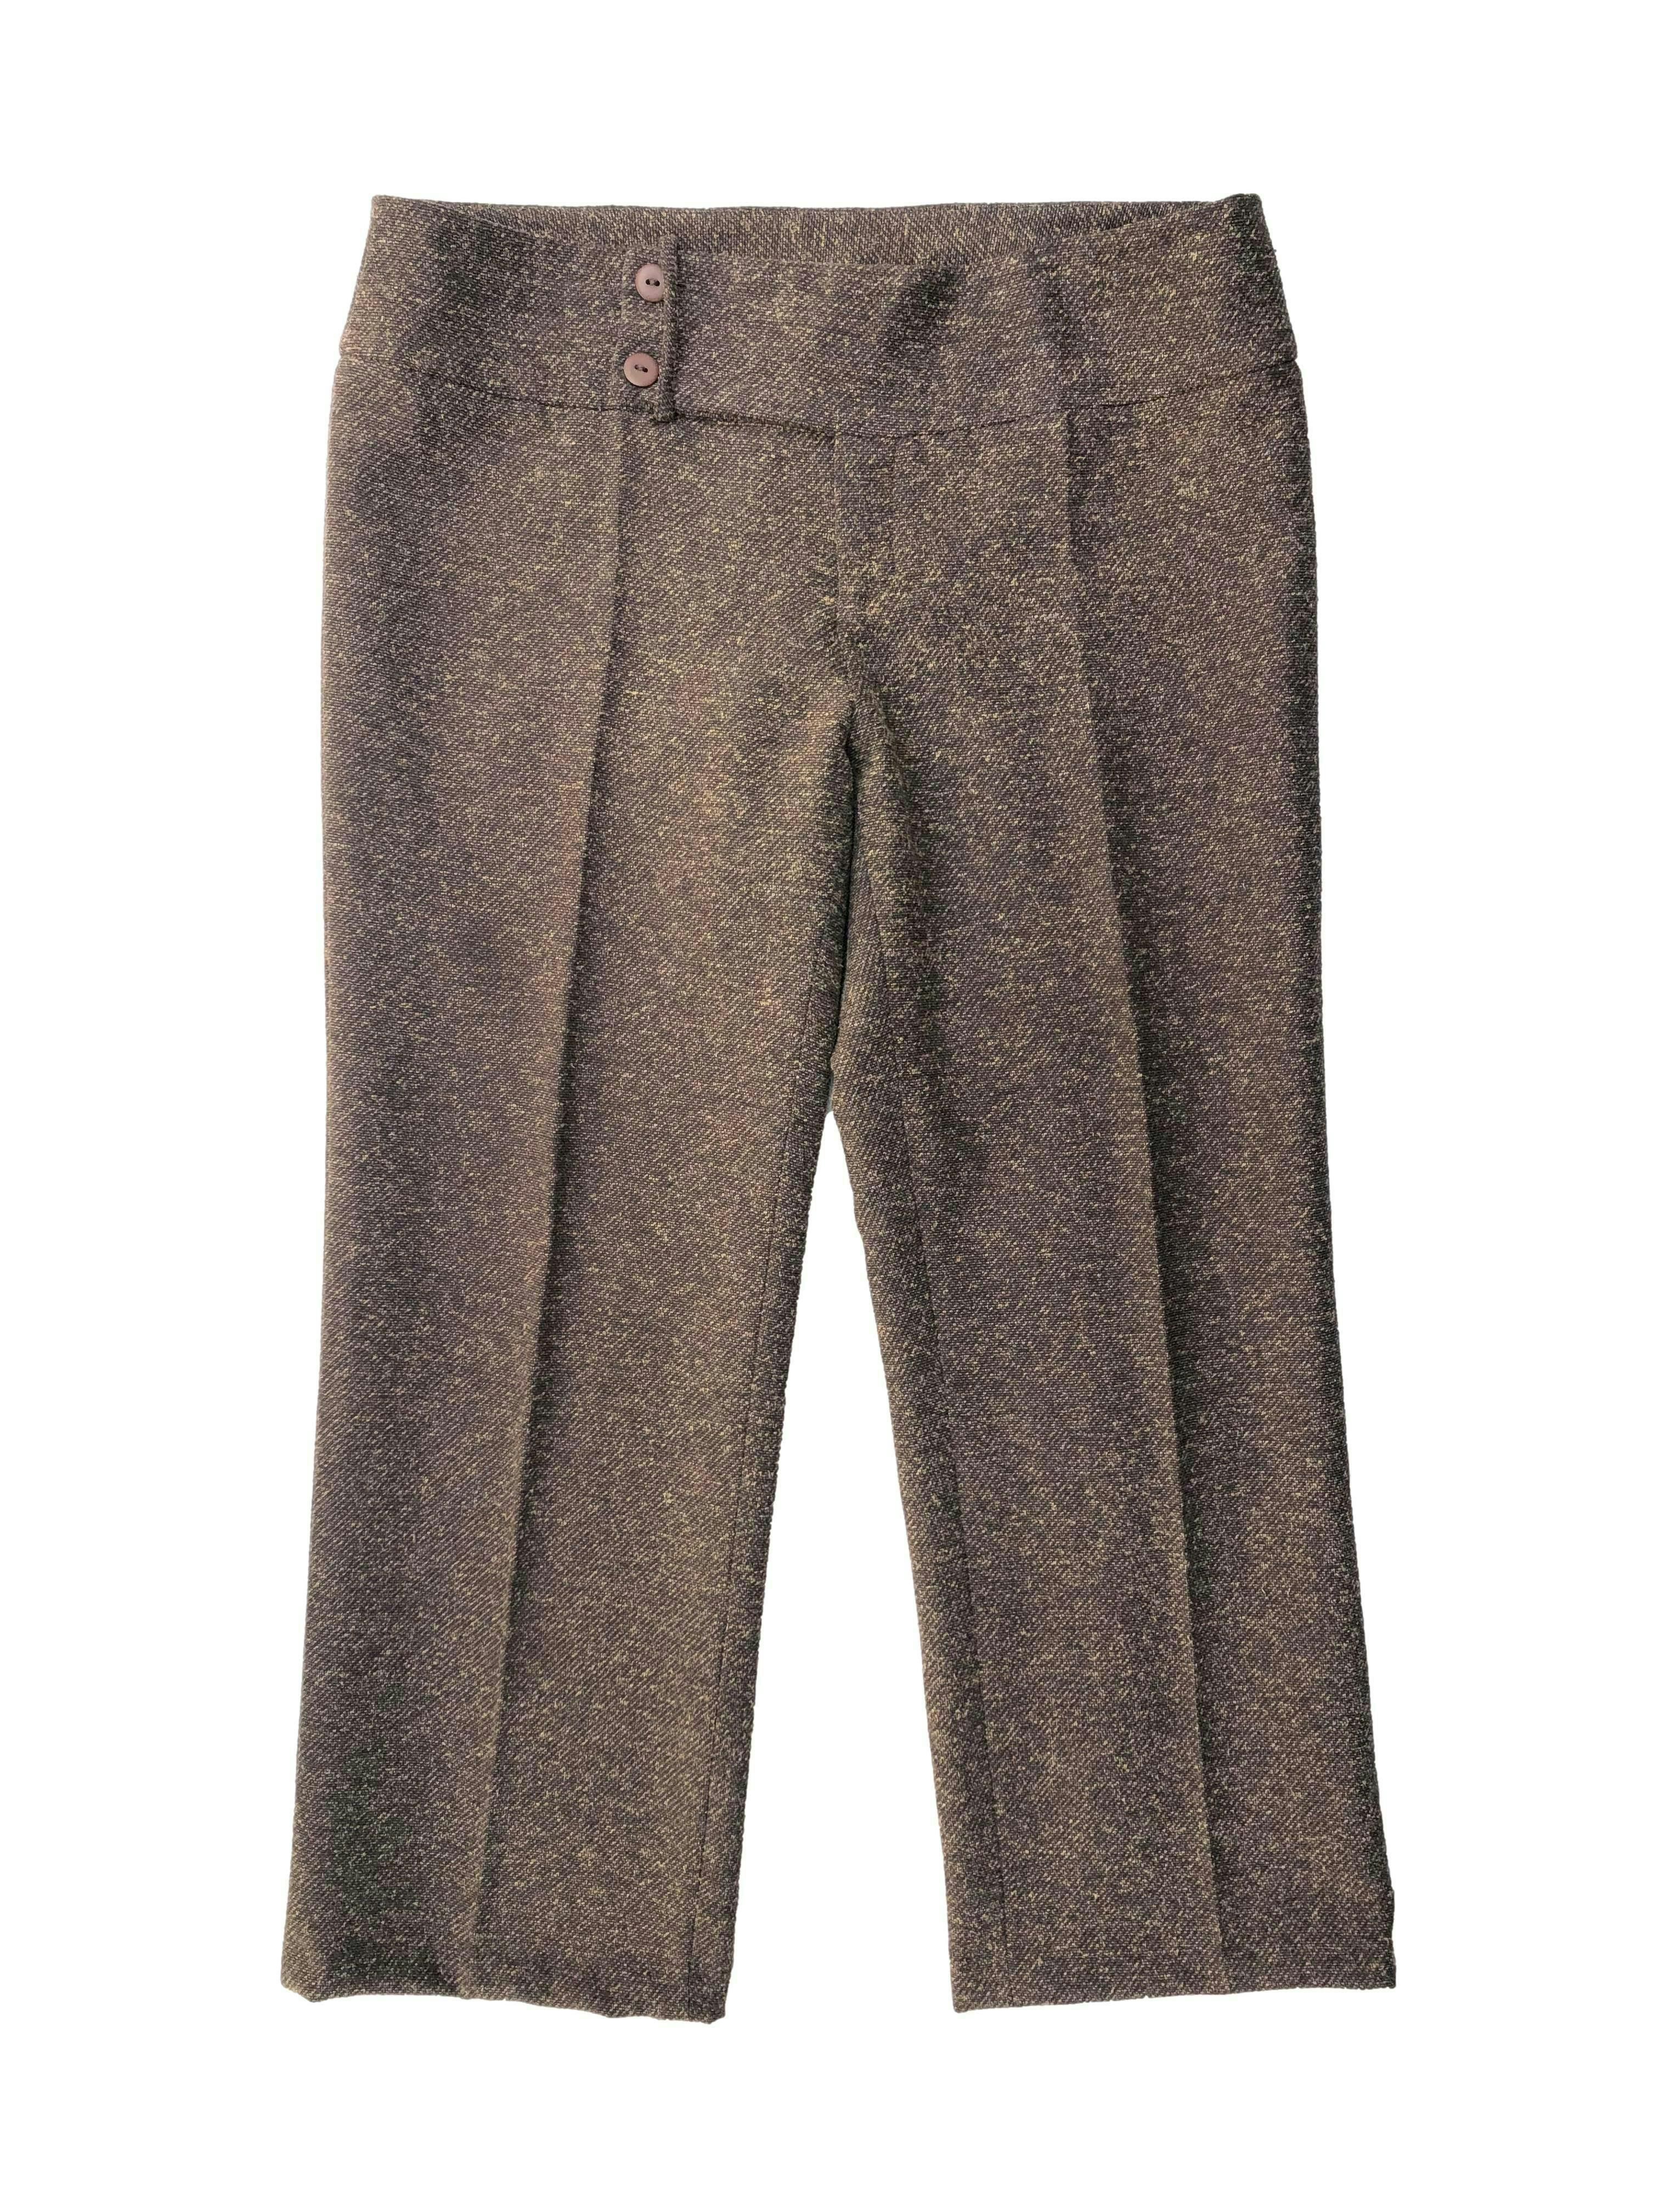 Pantalón capri Michelle Belau marrón de lanilla , tiro medio con pretina ancha y un bolsillo posterior. Tiro 22cm, Cintura 80cm, Largo 80cm.